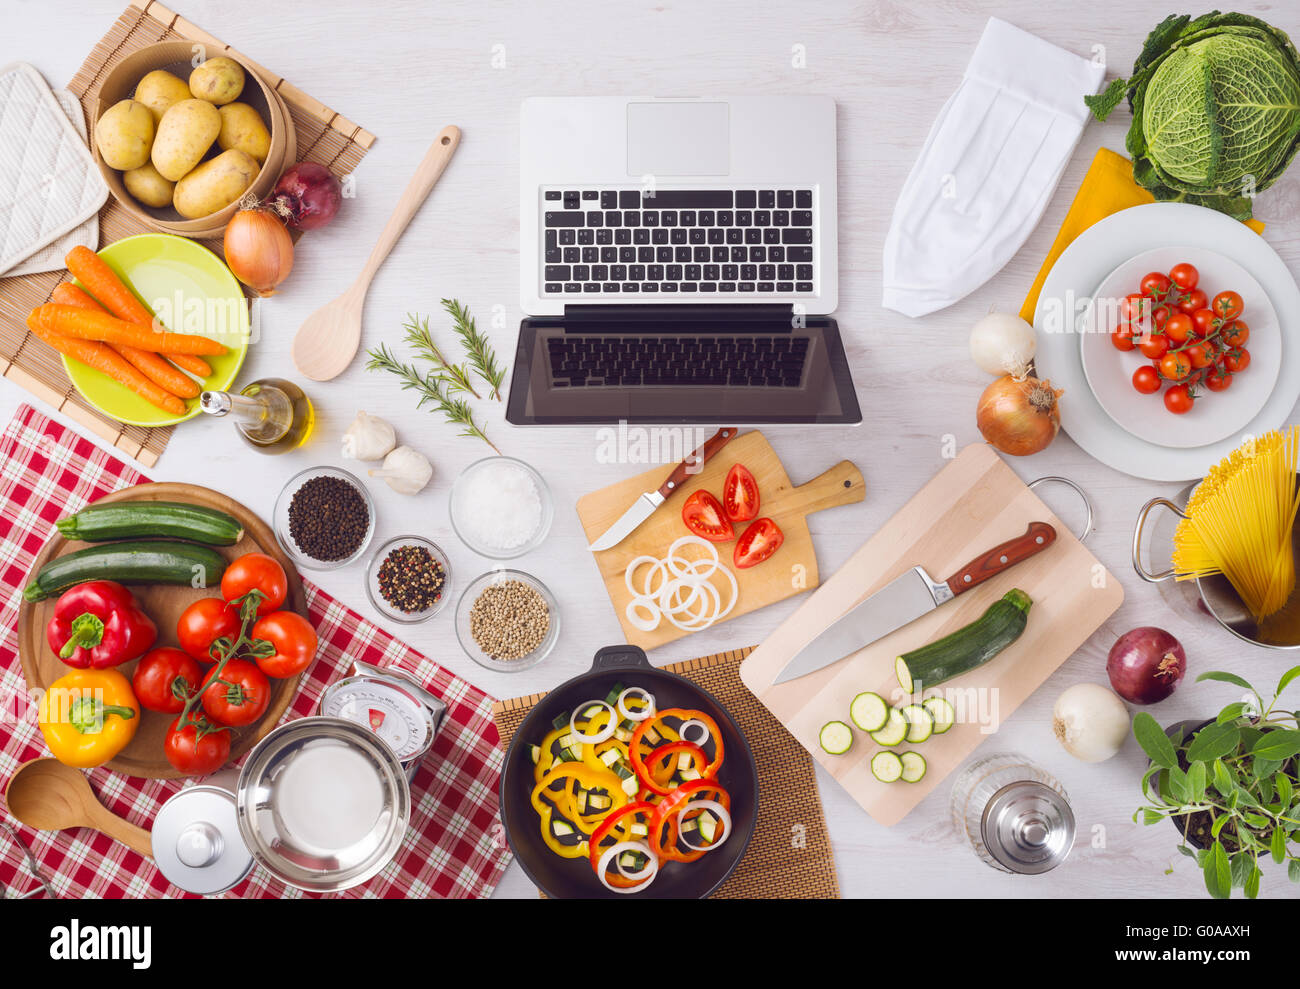 Küche zu Hause Table-Top Aussicht mit Laptop, Lebensmittelzutaten, rohes Gemüse, Geschirr und Besteck, Ansicht von oben Stockfoto